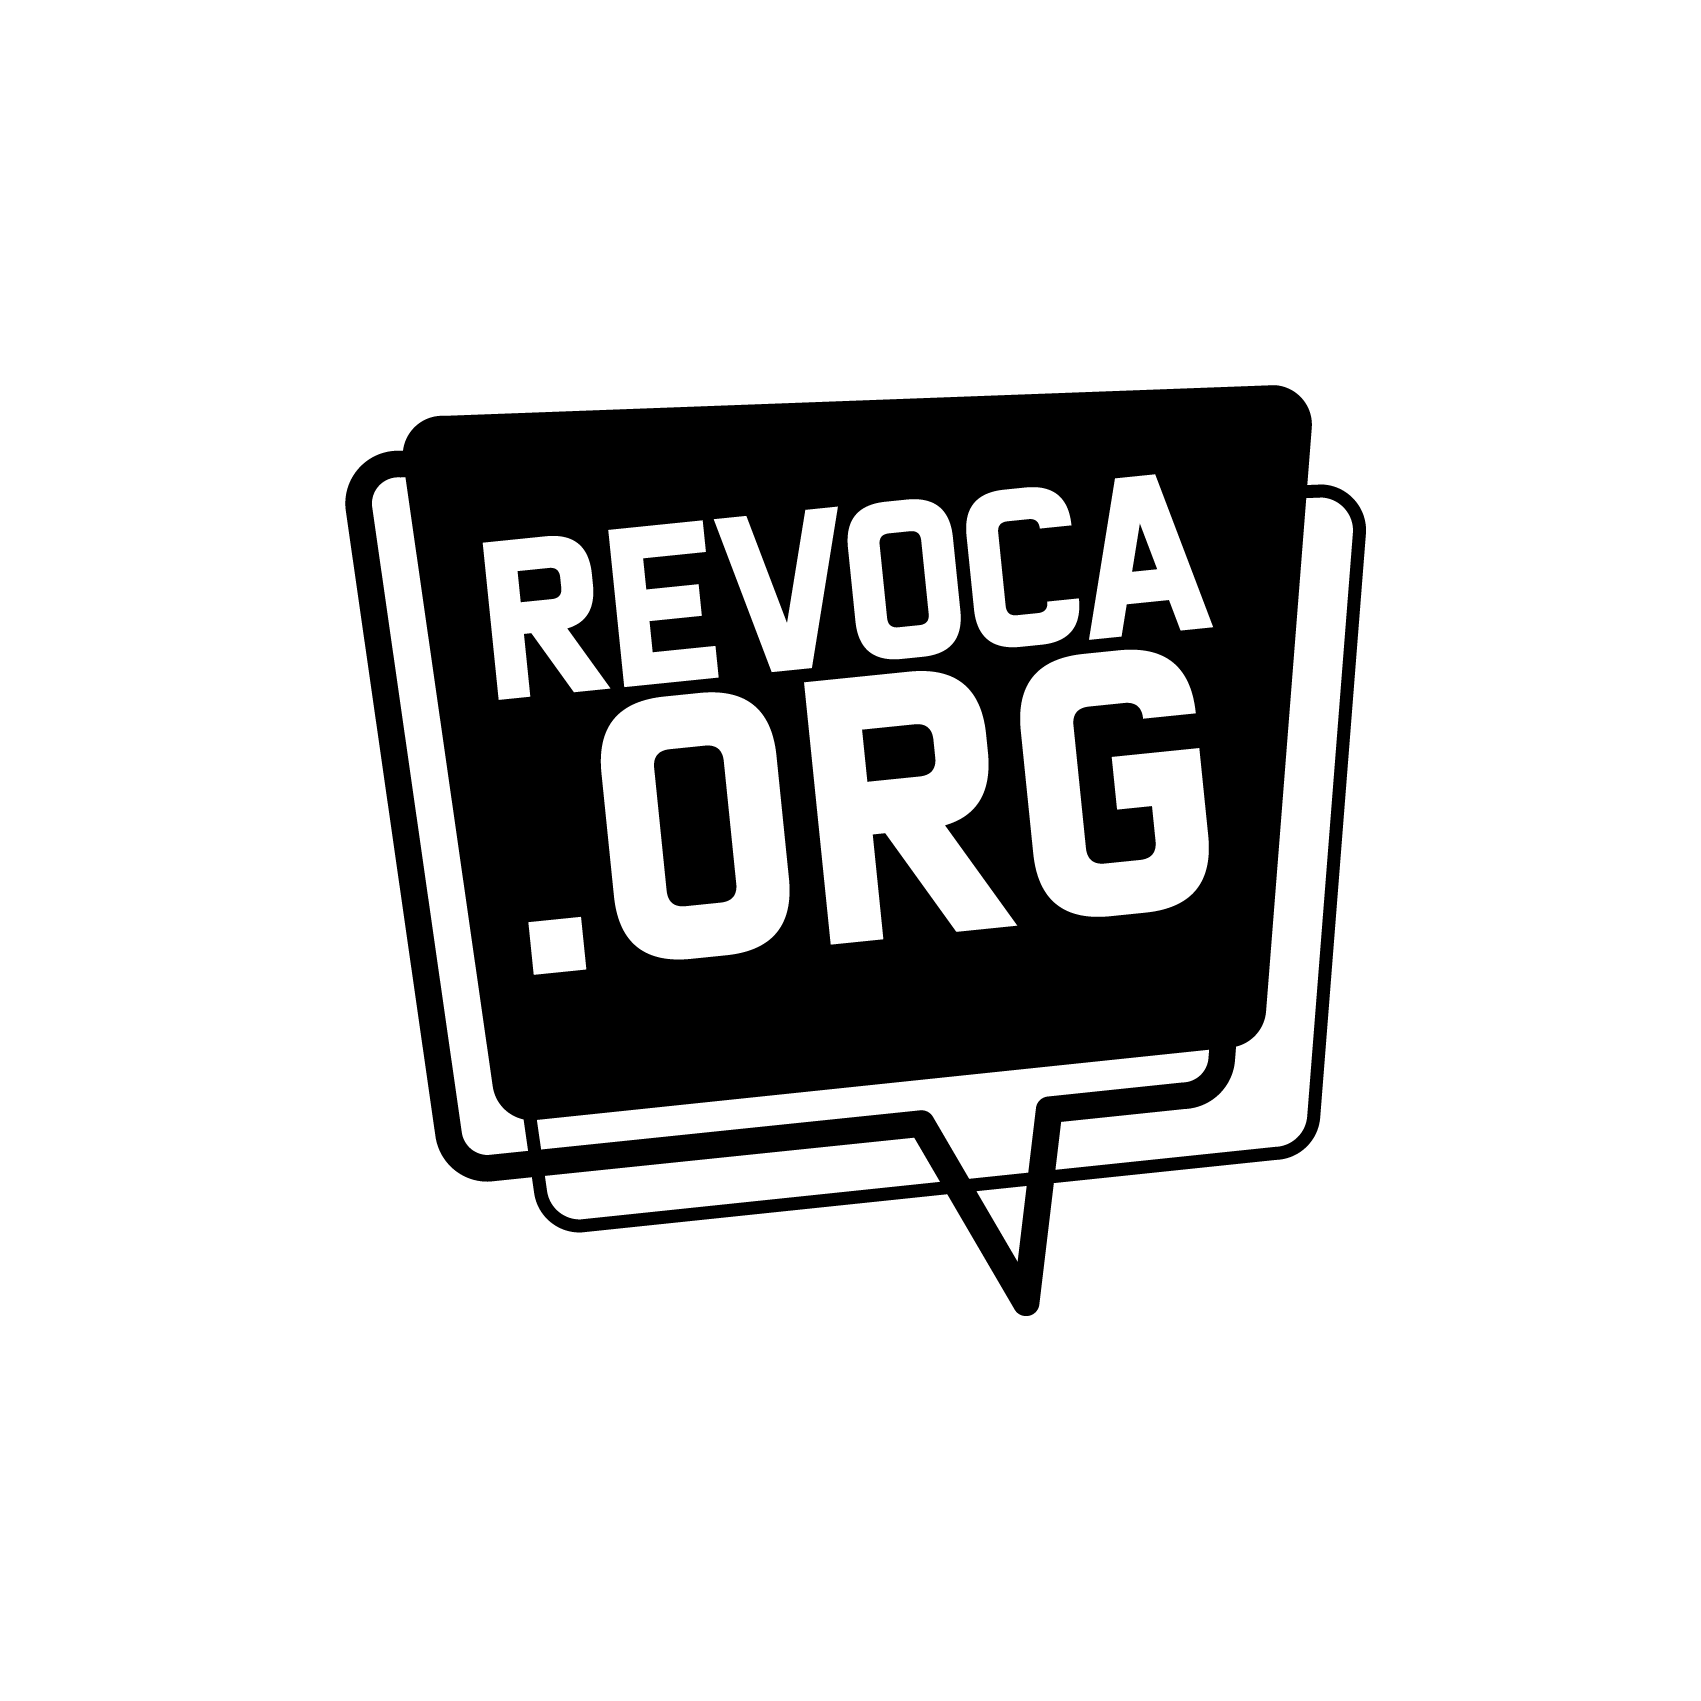 Revoca.org